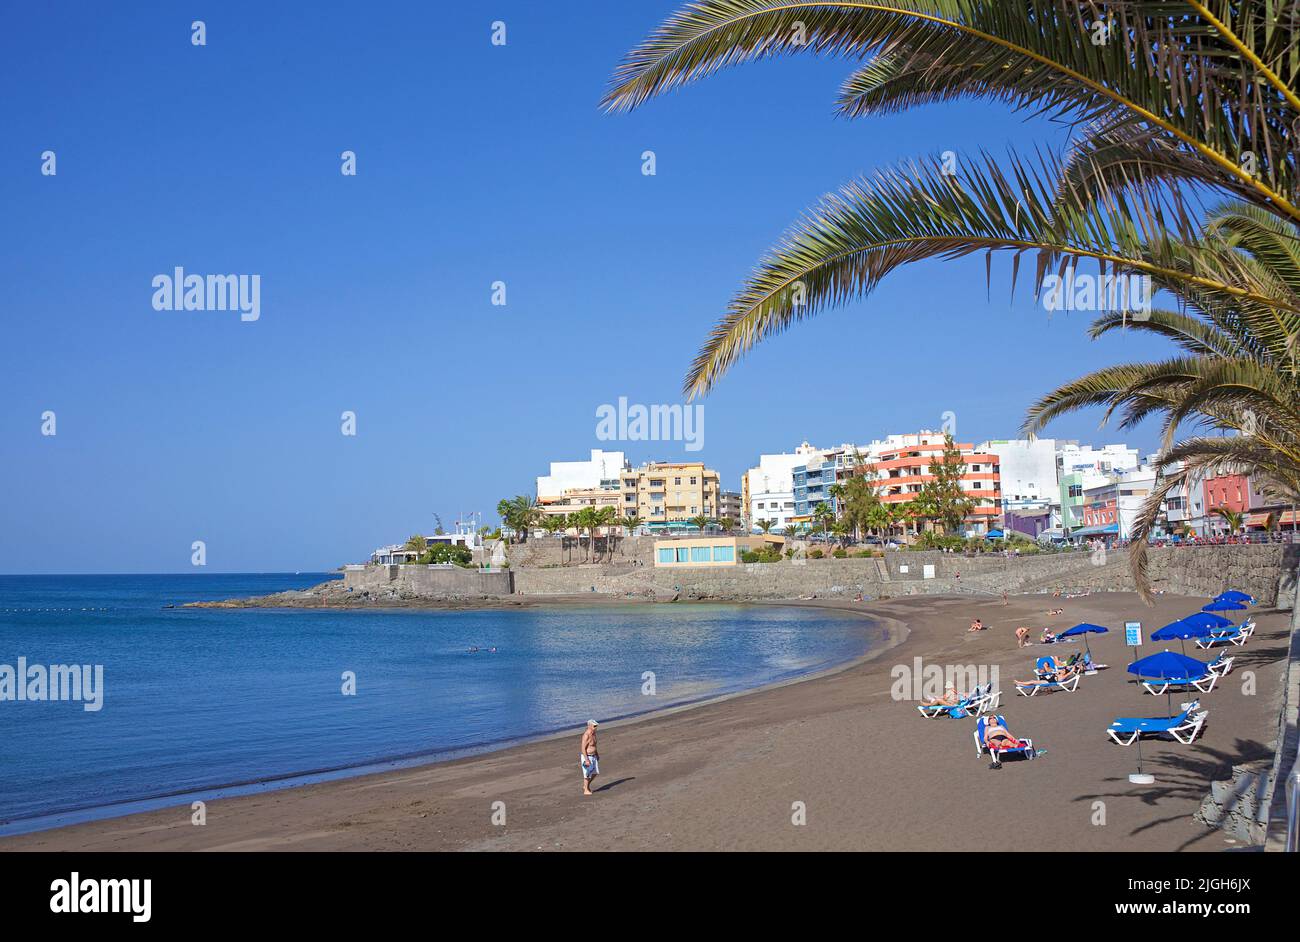 Strand von Arguineguin, Gran Canaria, Kanarische Inseln, Spanien, Europa | Strand von Arguineguin, Gran Canaria, Kanarische Inseln, Spanien, Europa Stockfoto